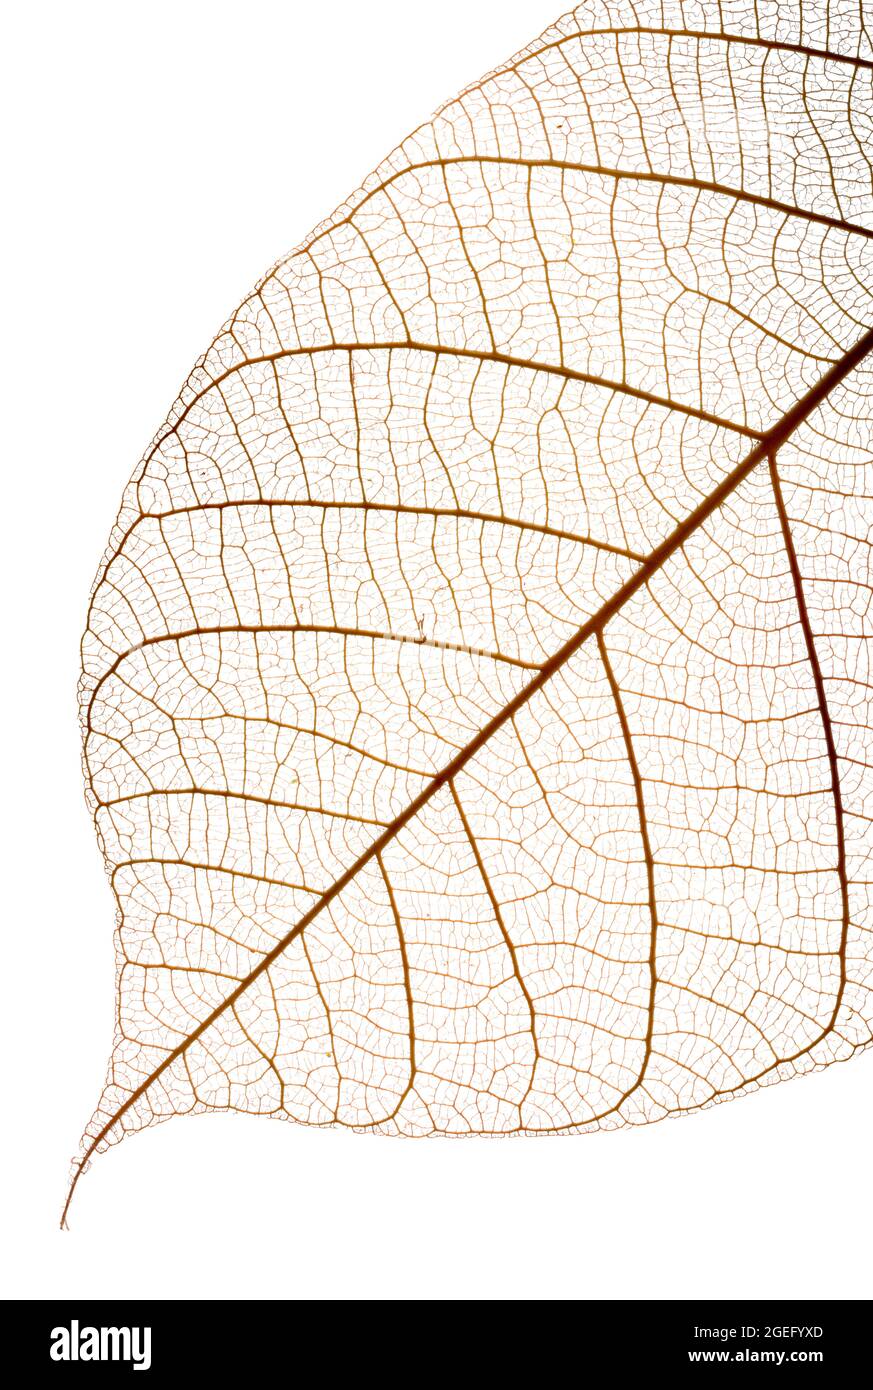 Chiudi su uno scheletro di foglie fotografato su uno sfondo bianco luminoso e che mostra il pattern venoso ramificato Foto Stock